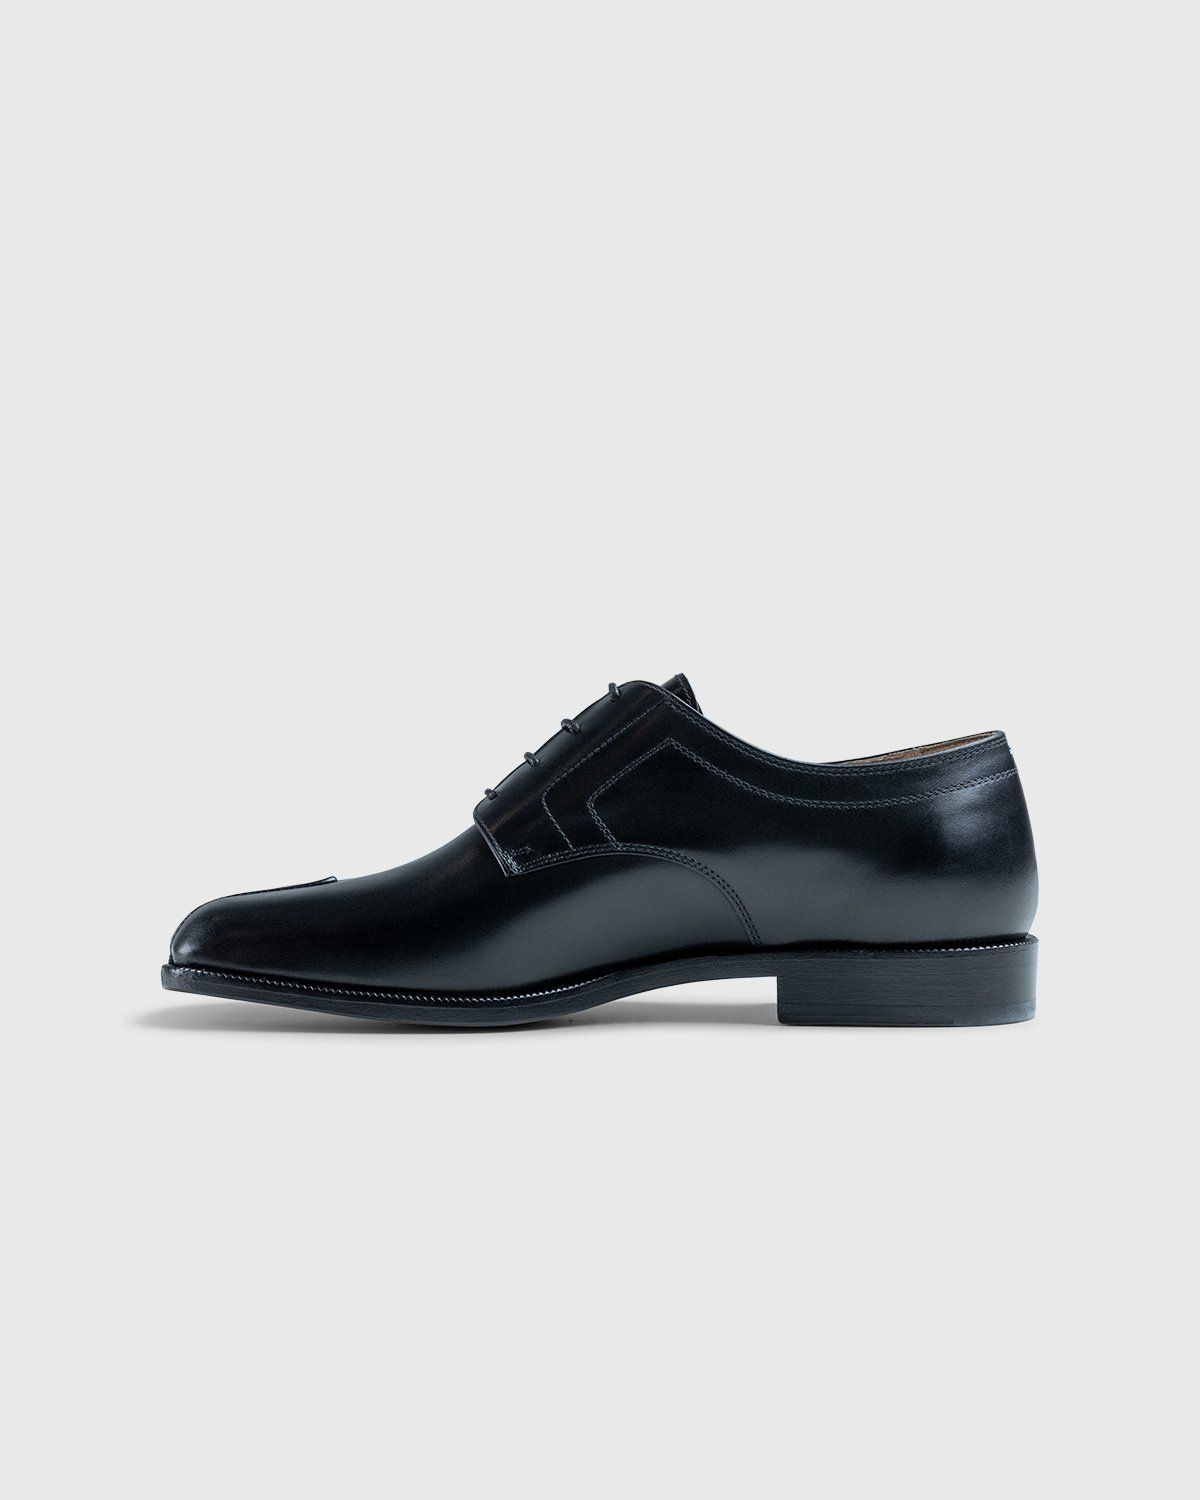 Maison Margiela – Tabi Lace-up Shoes Black - Shoes - Black - Image 7